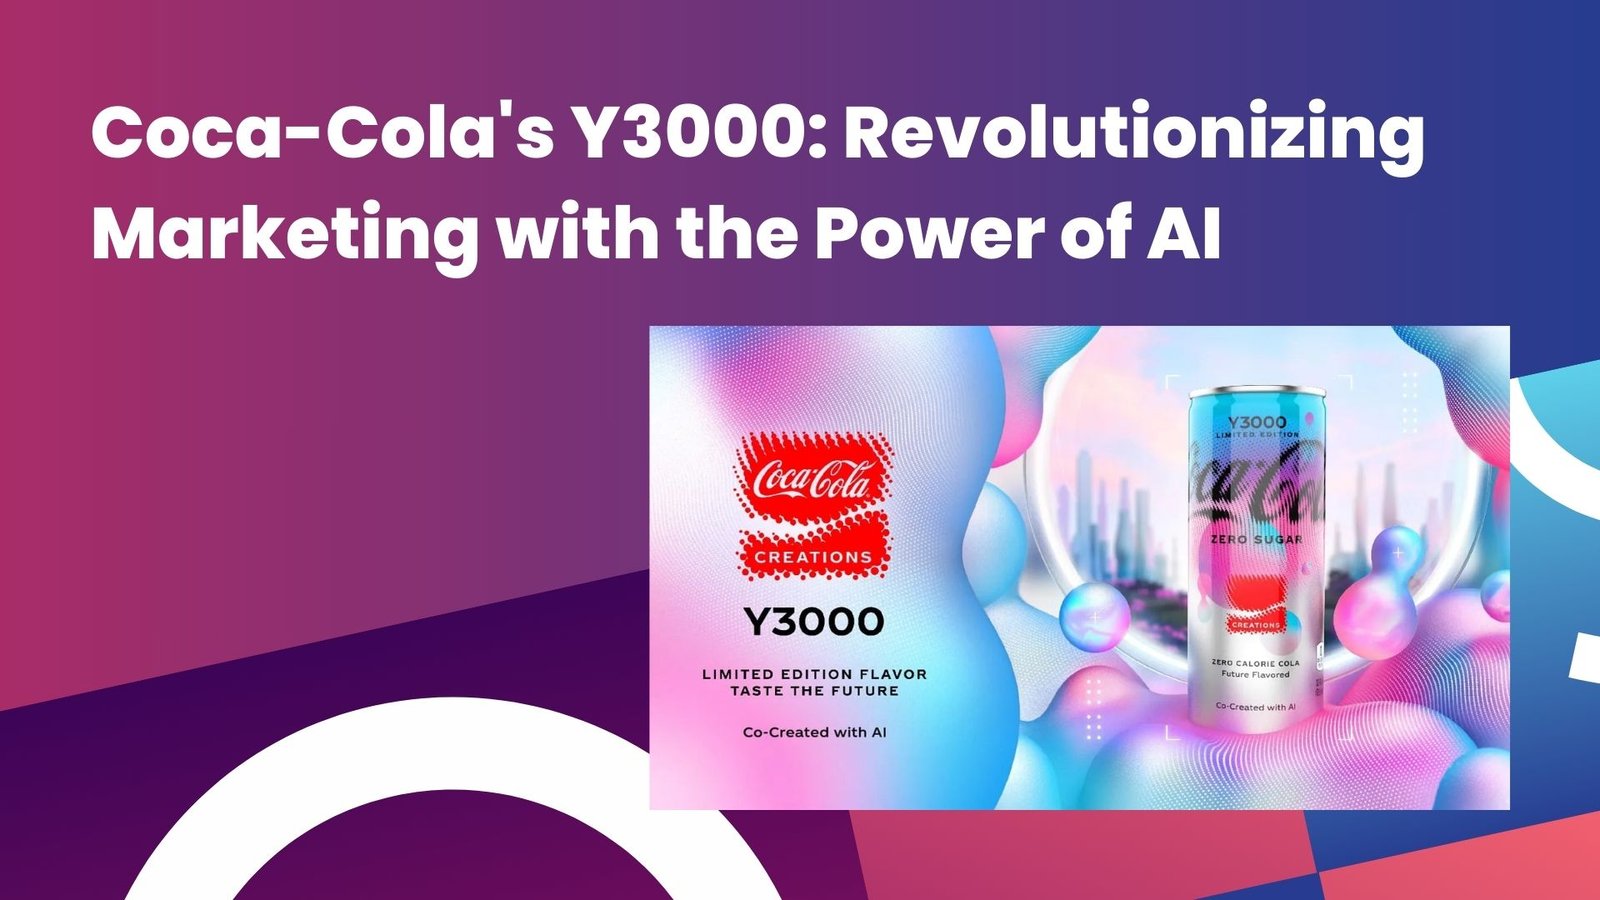 Coca-Cola Y3000 campaign